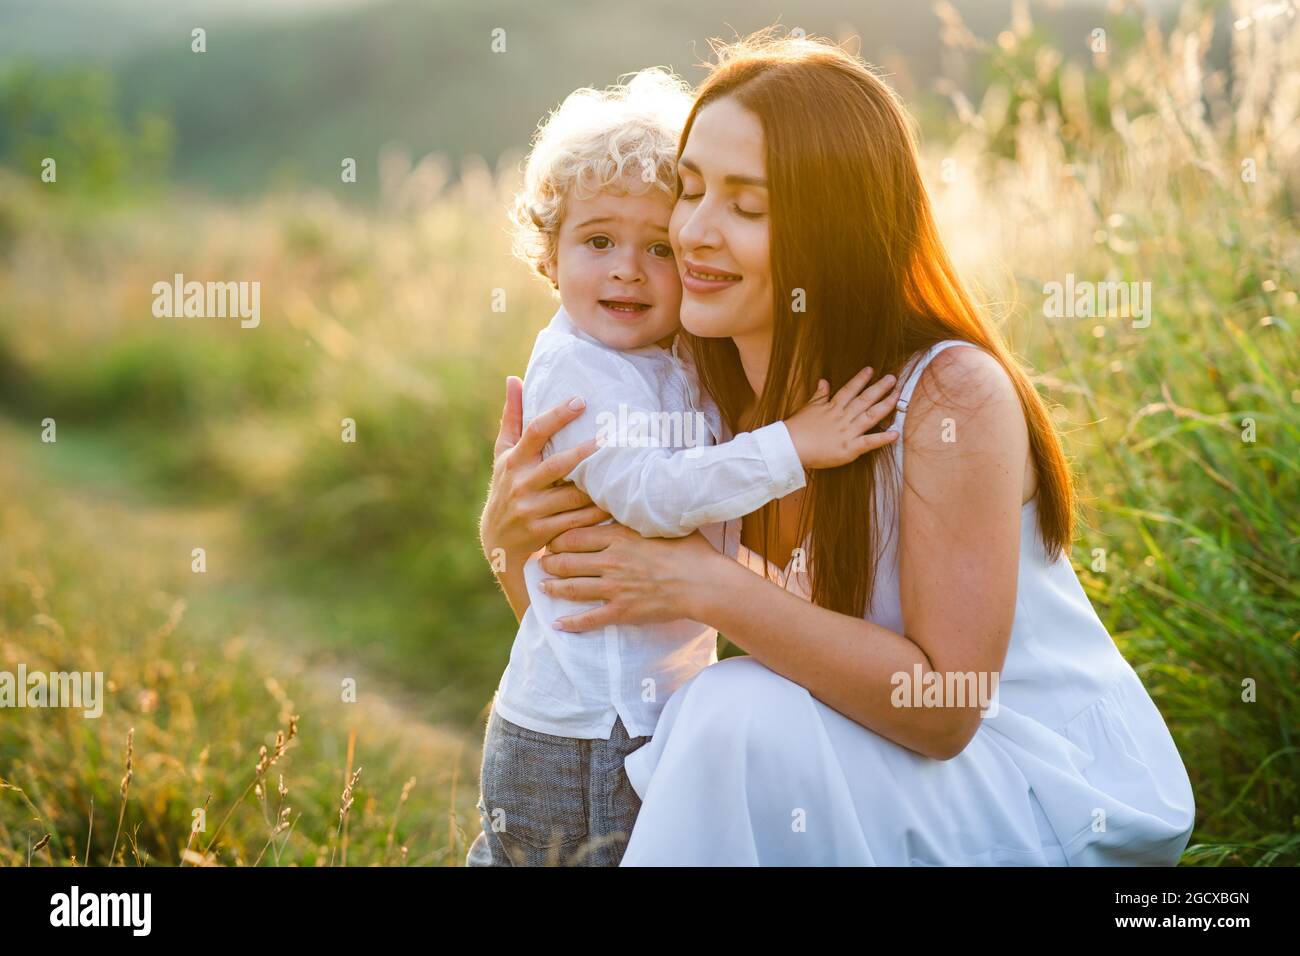 La madre amorevole abbraccia suo figlio mentre cammina in un campo pittoresco Foto Stock